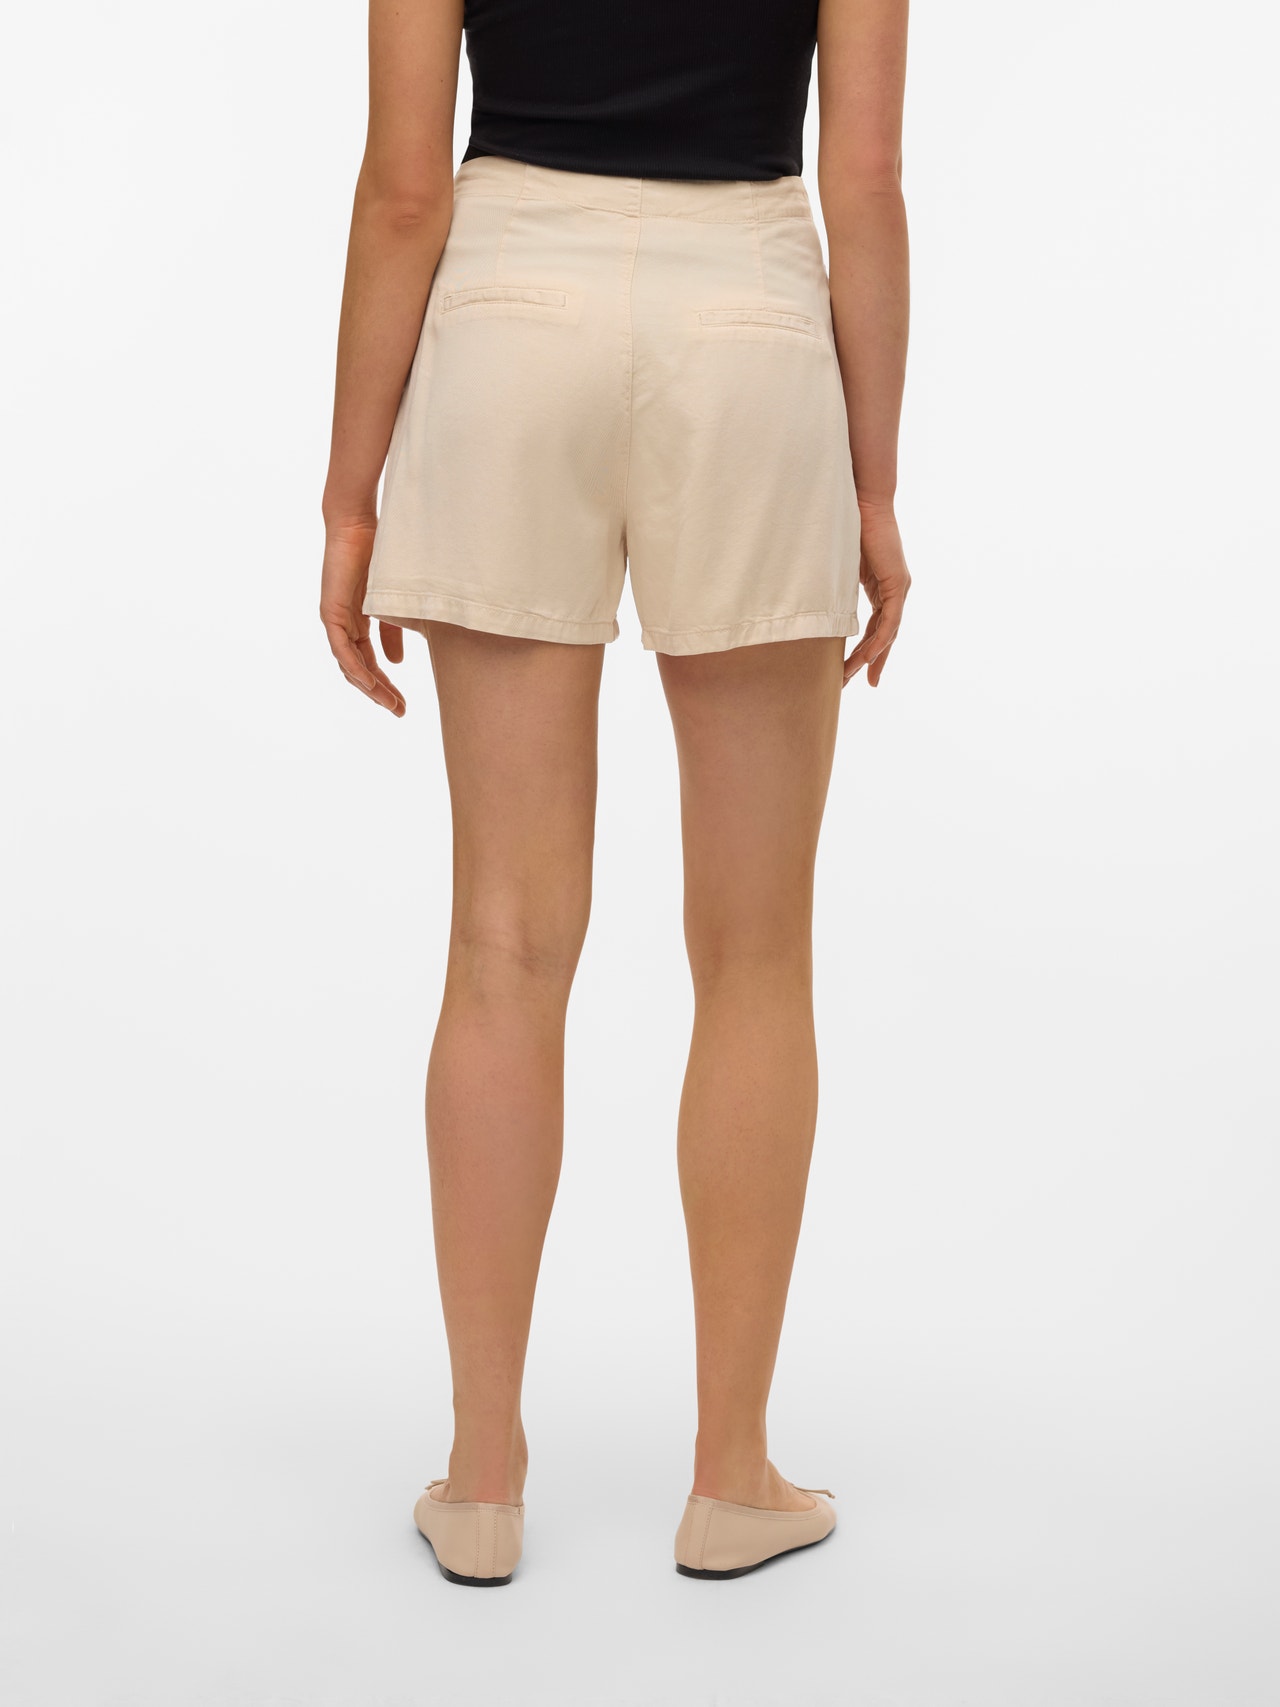 Vero Moda VMMIA Shorts -Oatmeal - 10209543